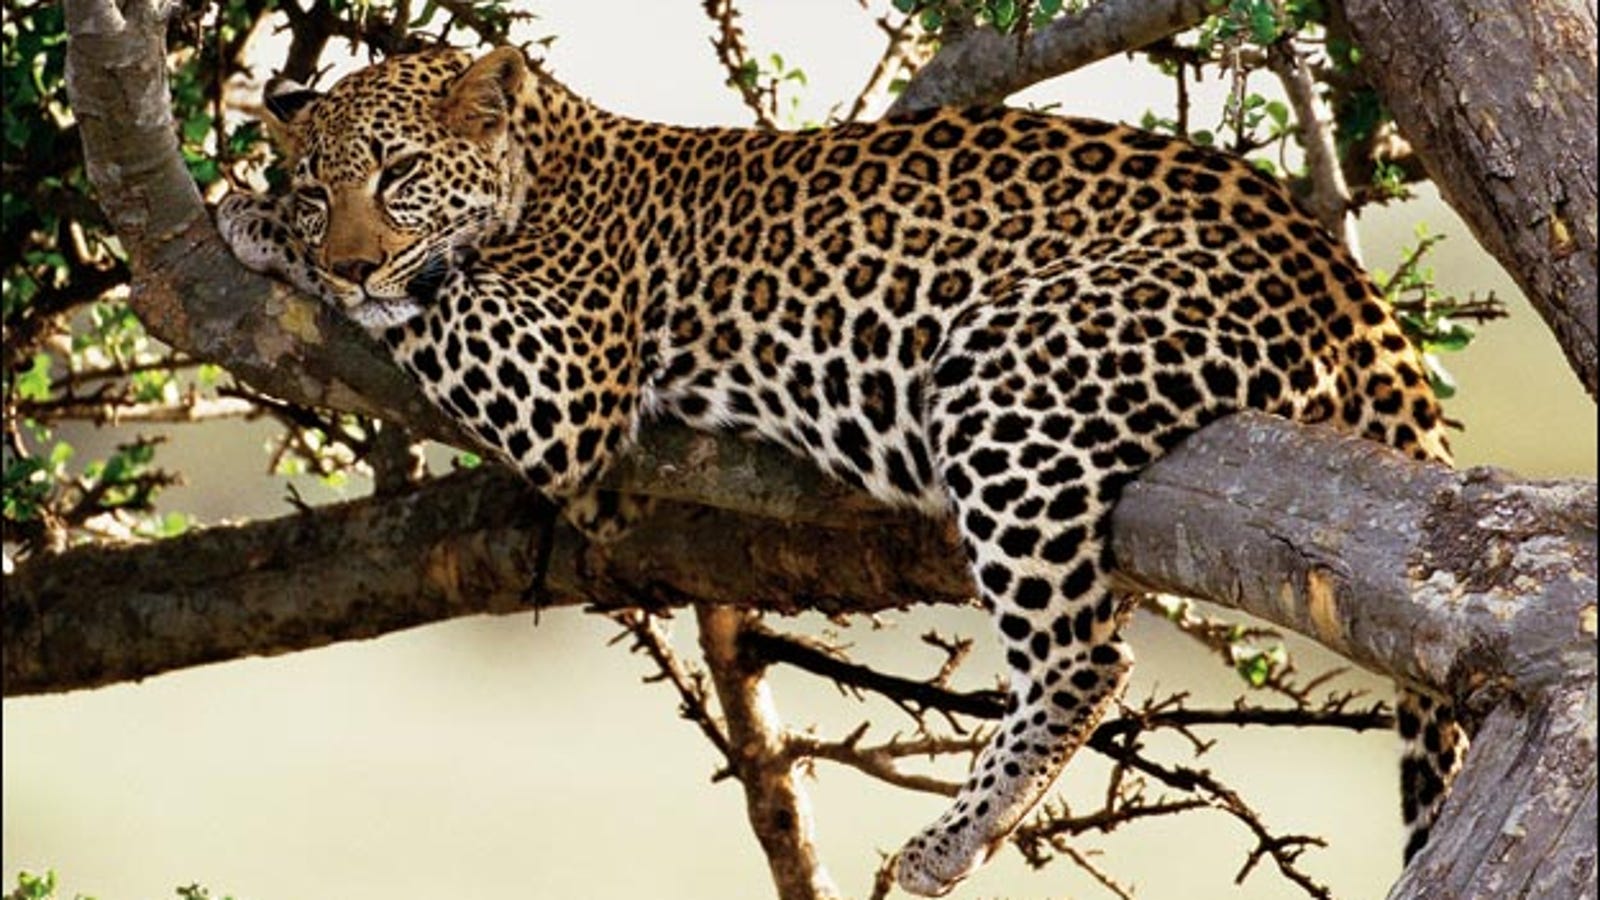 Дальневосточный леопард на дереве